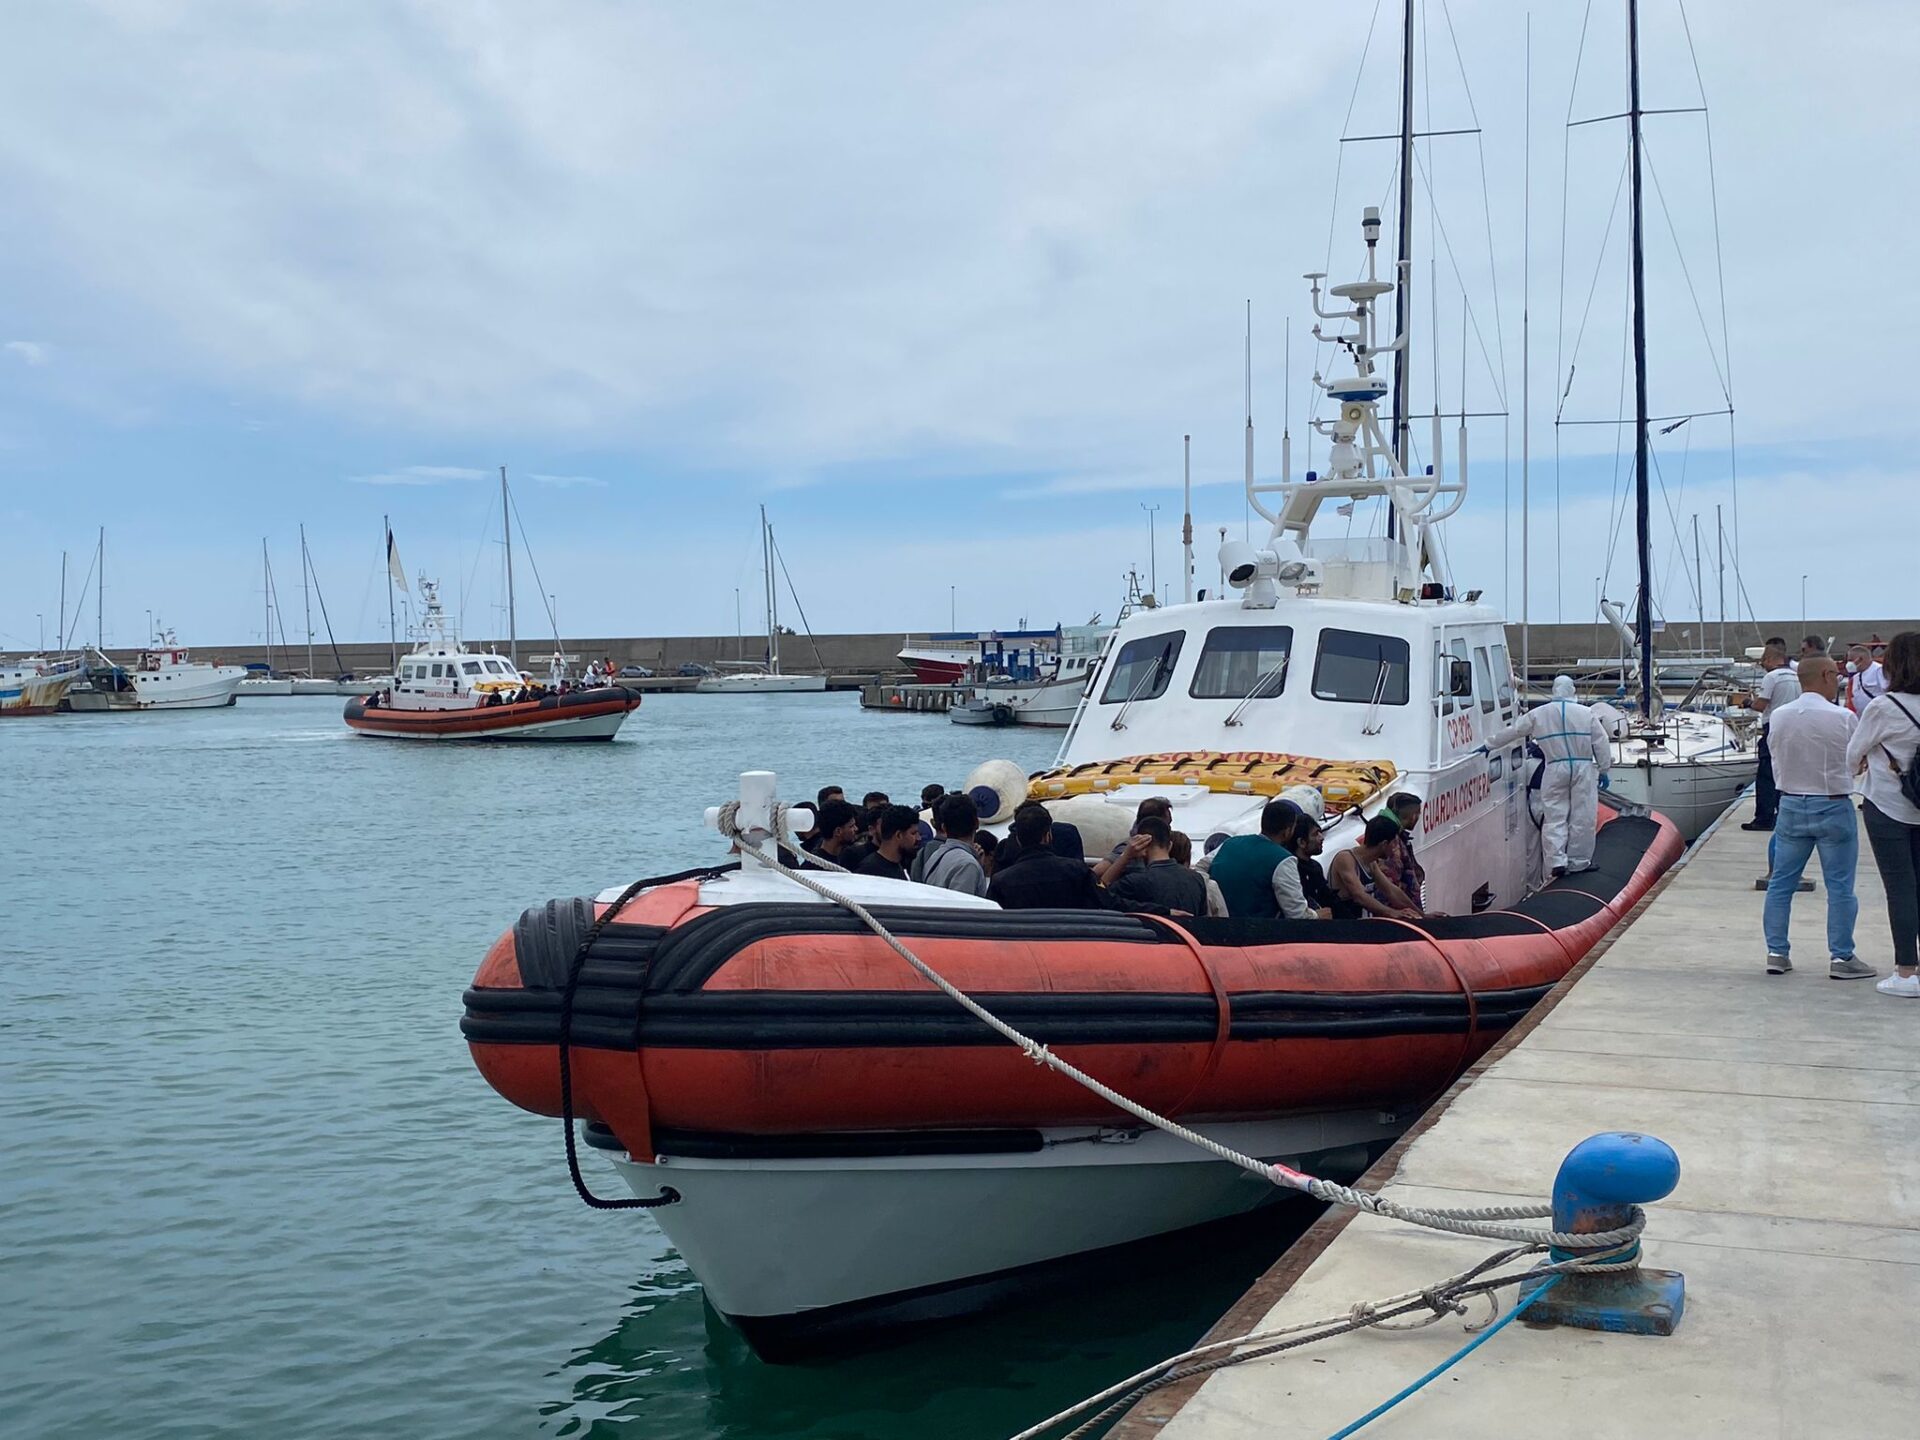 Roccella, gli sbarchi non si fermano: soccorsi 80 migranti